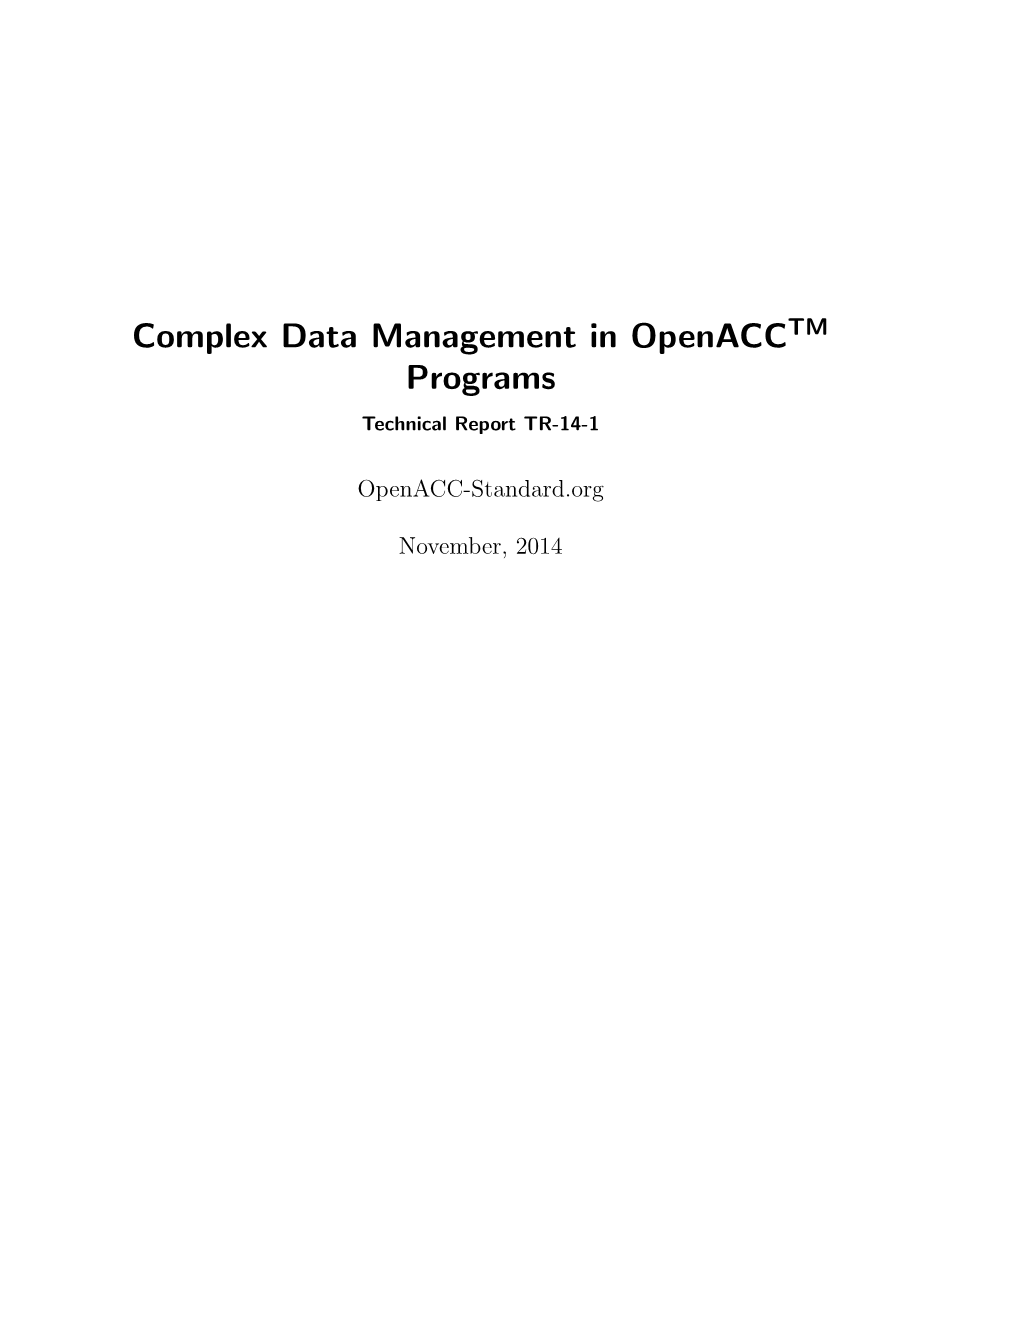 Complex Data Management Tech Report